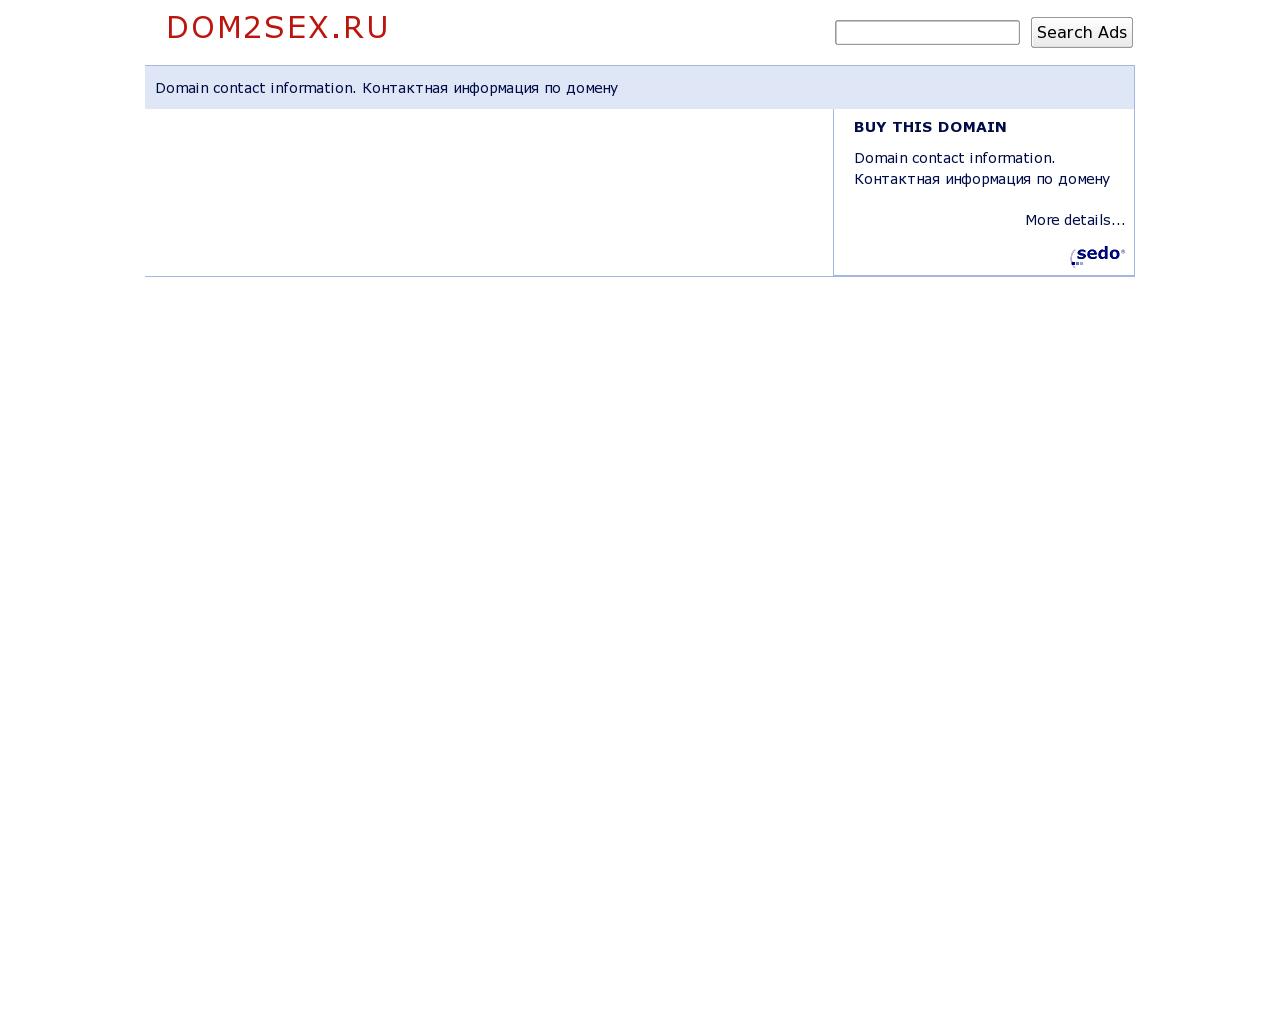 Изображение сайта dom2sex.ru в разрешении 1280x1024